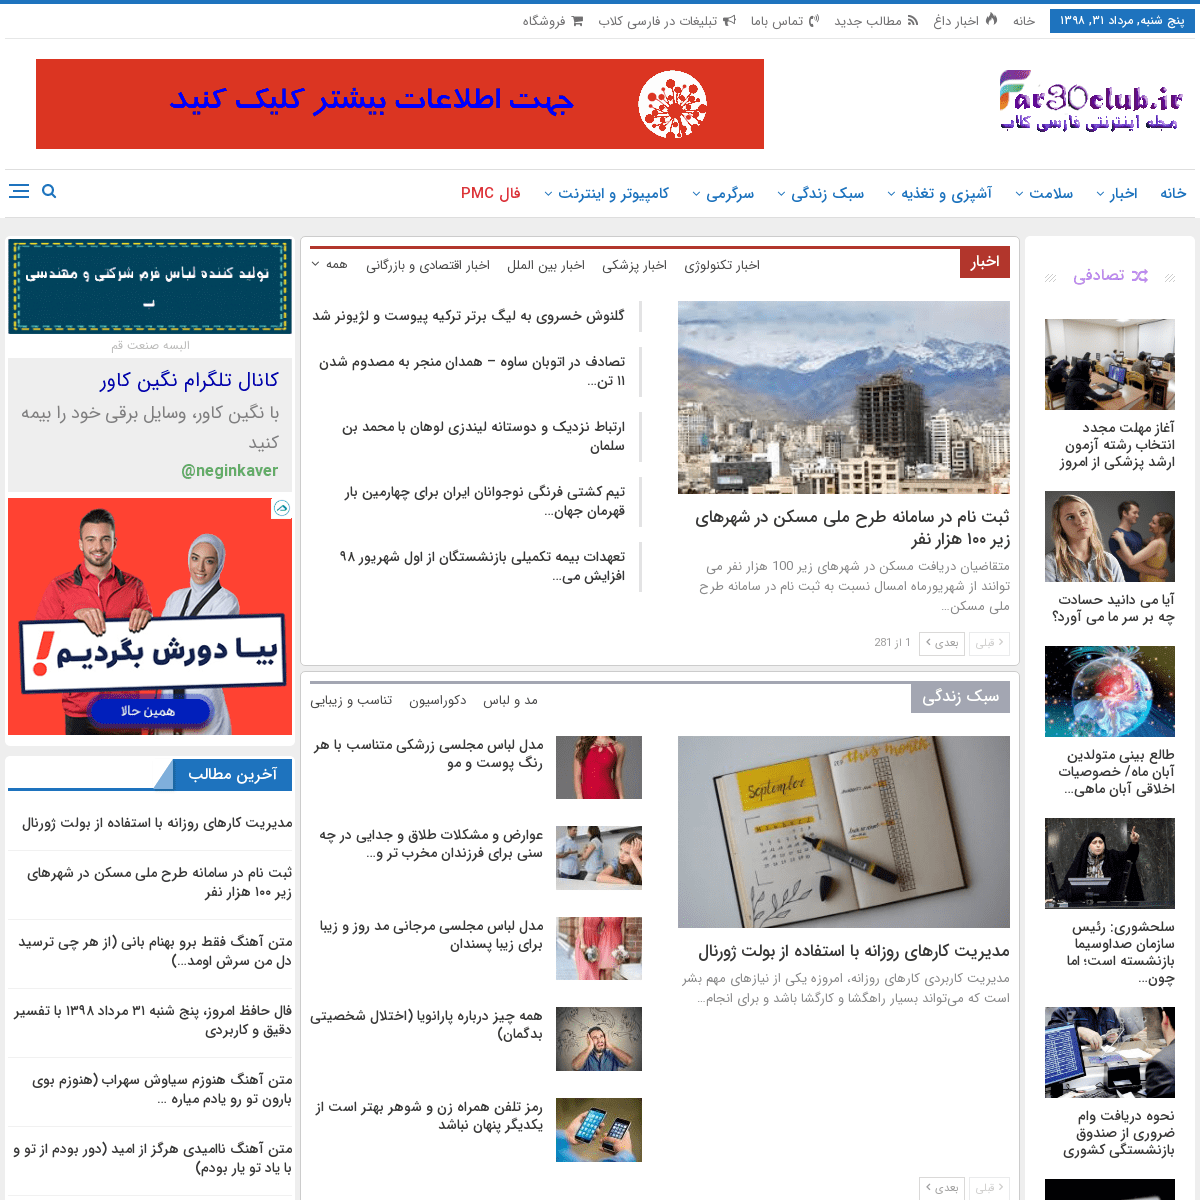 فارسی کلاب - پورتال خبری و مجله اینترنتی آنلاین